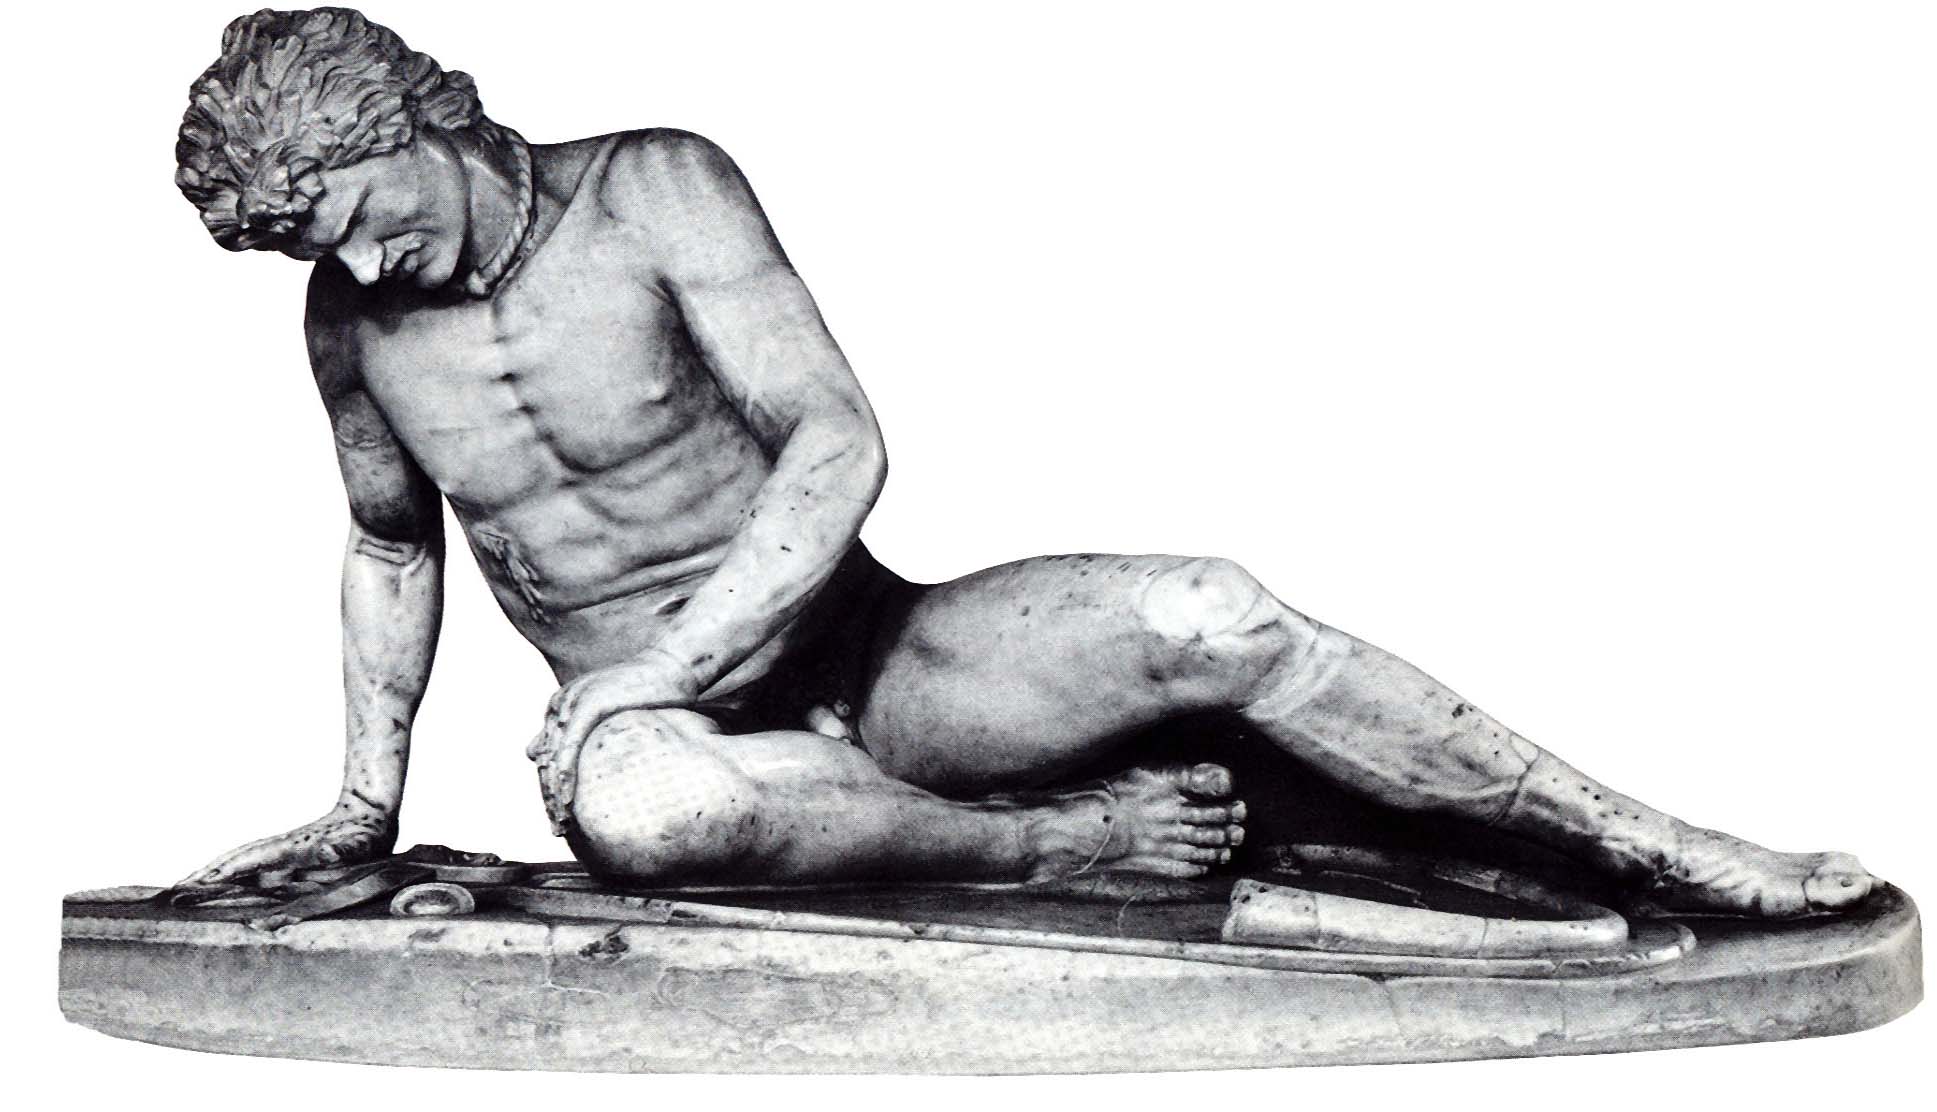 Mirstošs gladiators. [9] Galēns Pergamā bija ārsts gladiatoru skolā un iepazinās ar traumu un ievainojumu dziedināšanu